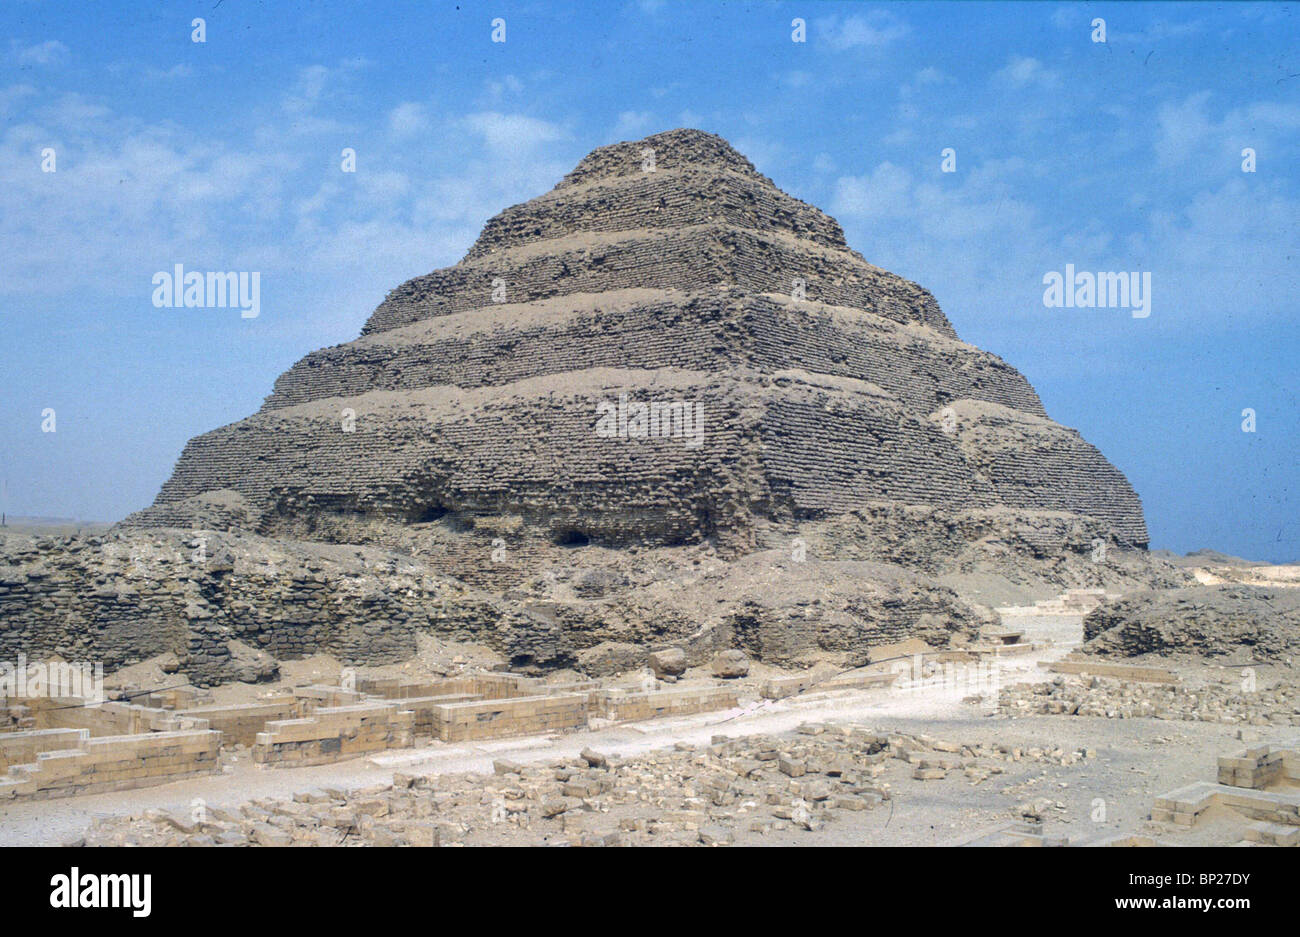 La pirámide escalonada de SAQARA TUMBA DEL REY DJOSER DE LA 3ª. DYNASTY ES LA más antigua de las pirámides que datan de los años 2686 - Foto de stock